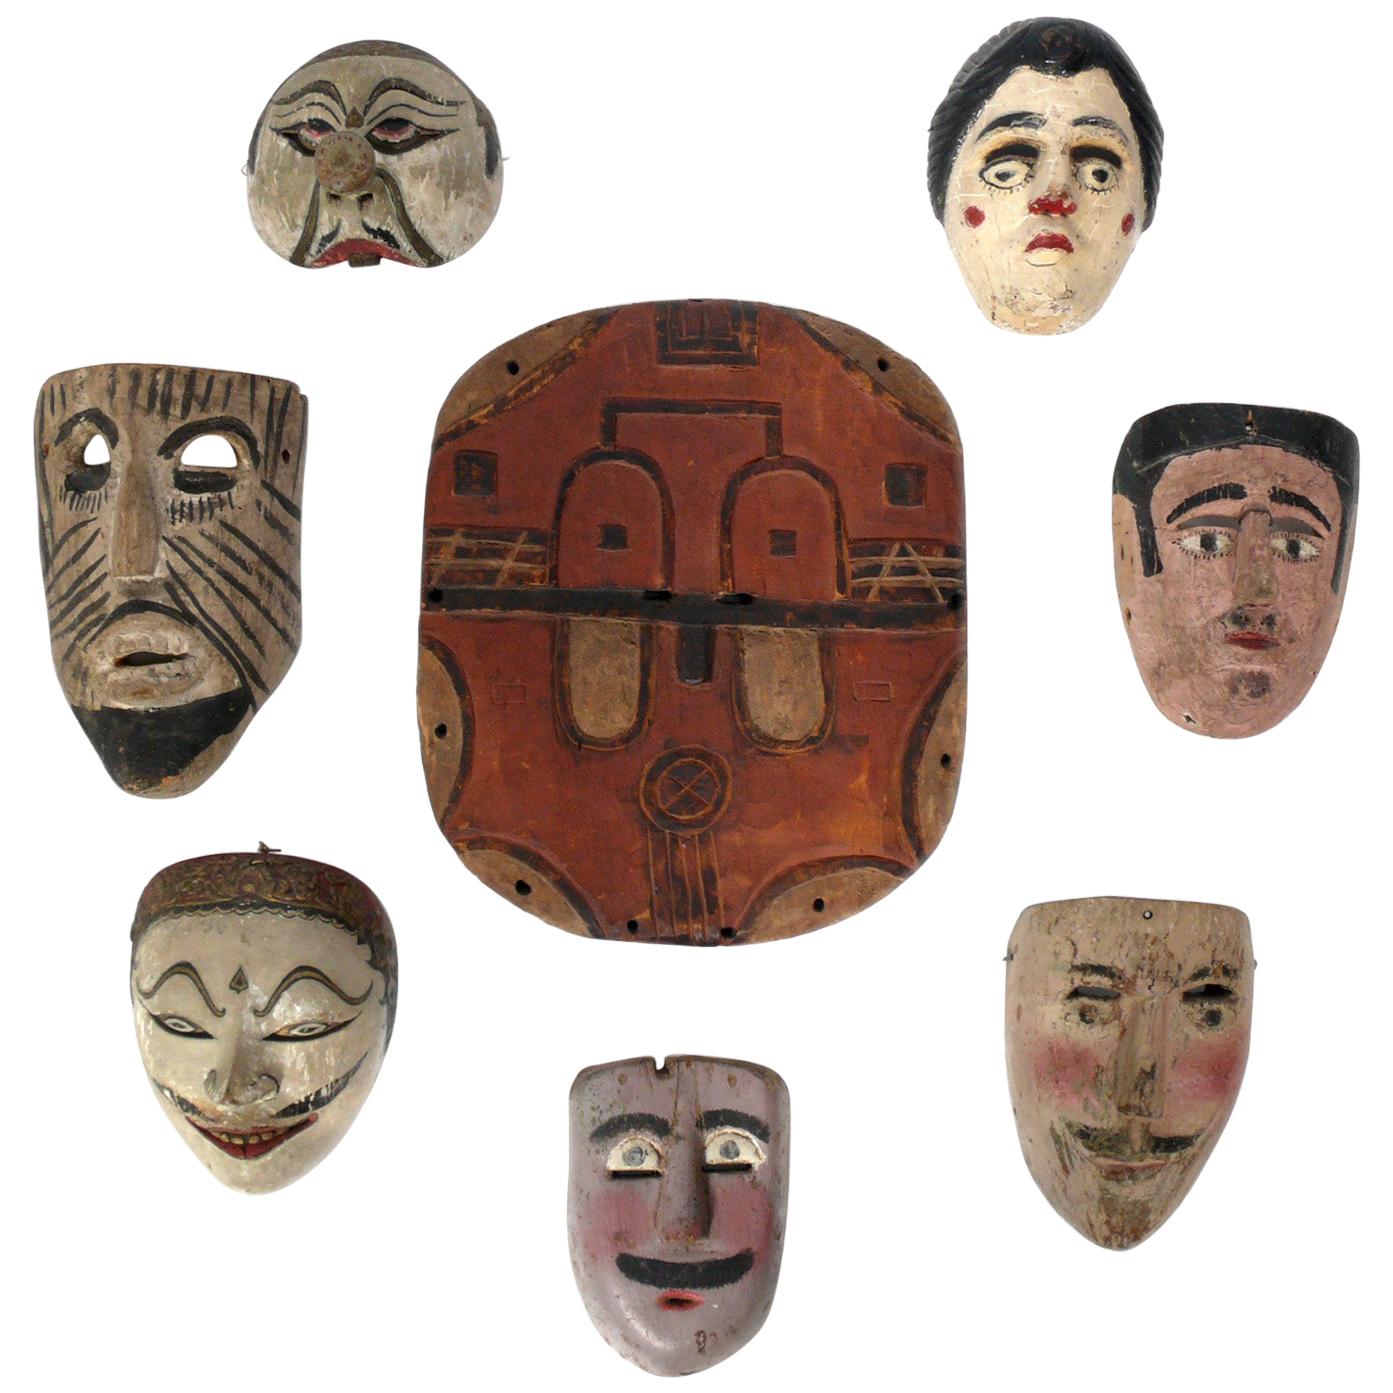 Collection de masques d'art populaire sculptés à la main de voyageurs du monde entier